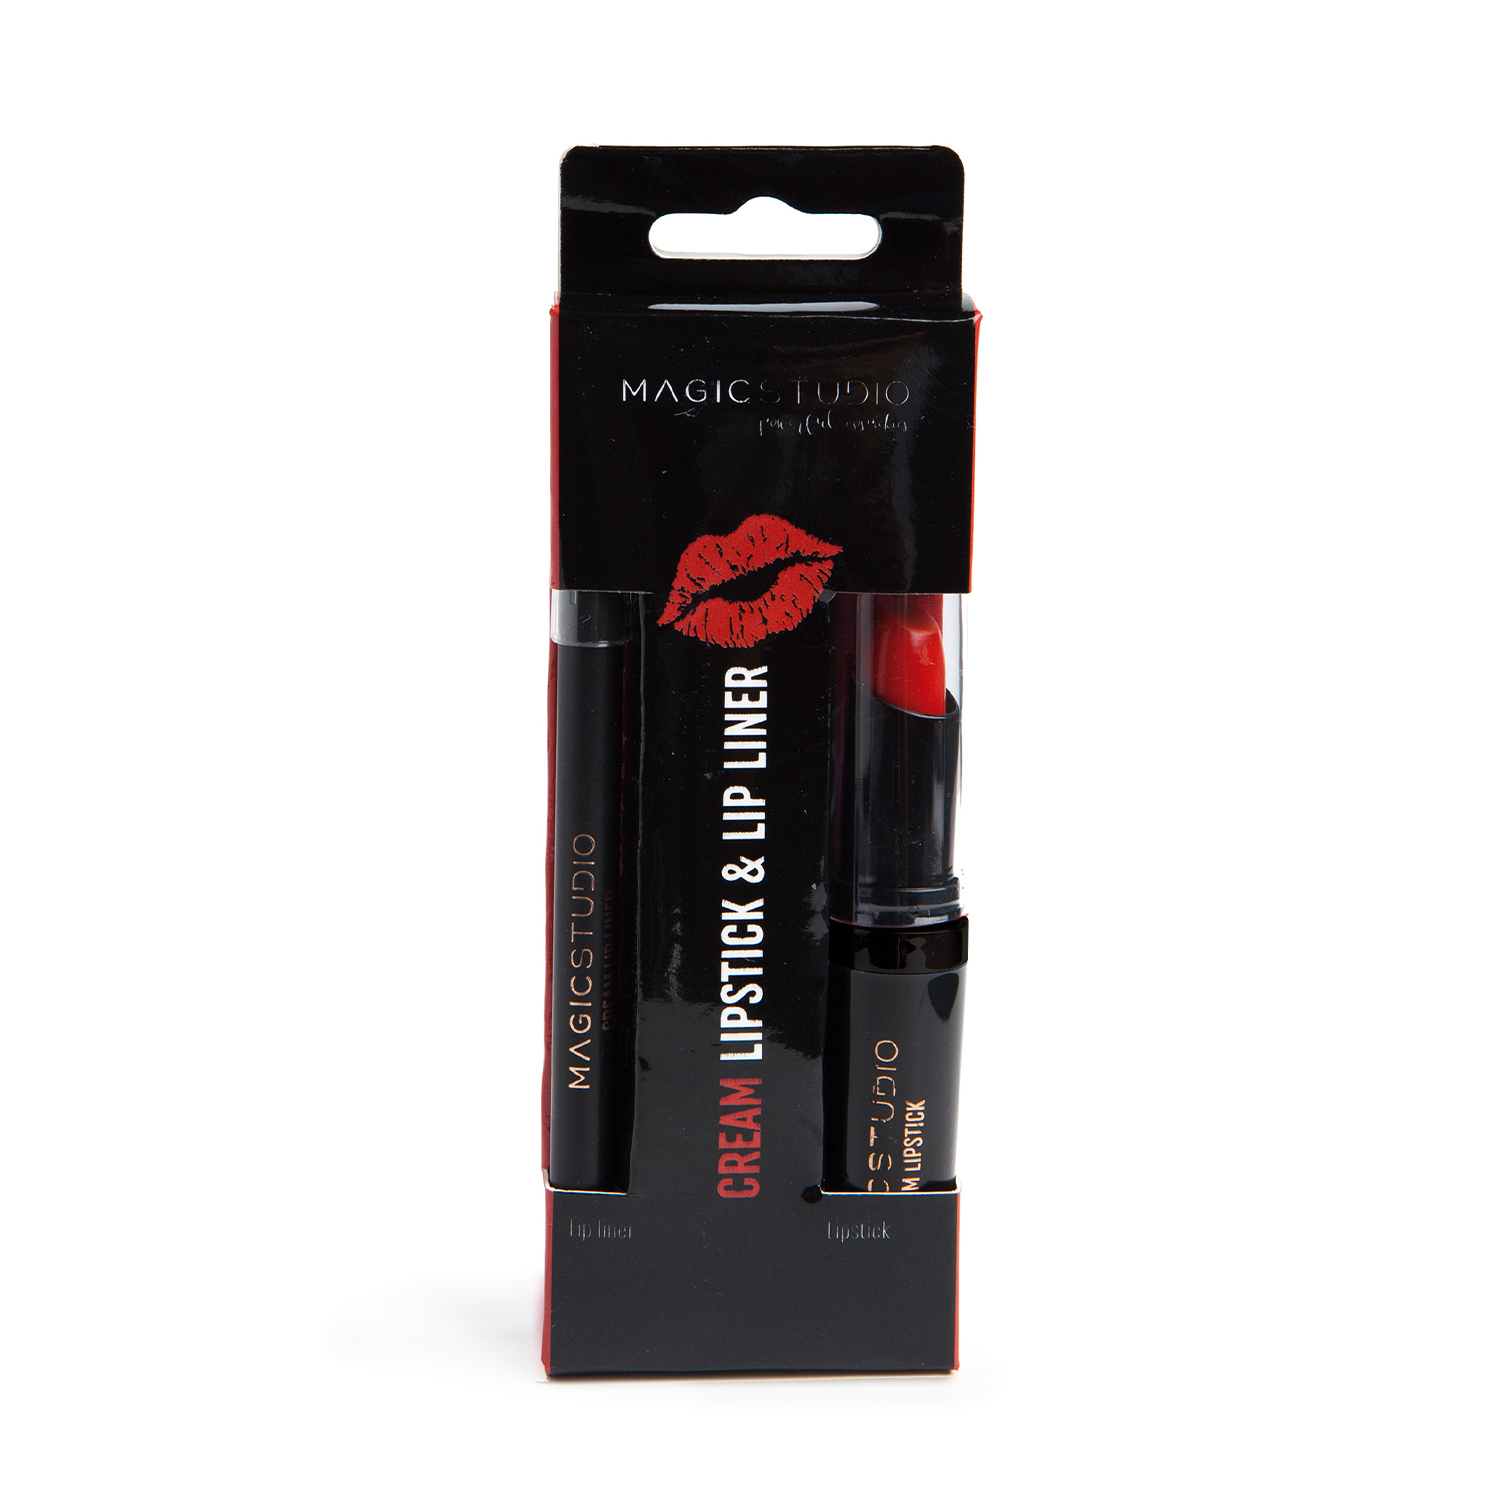 Cream Lipstick & Lip Liner